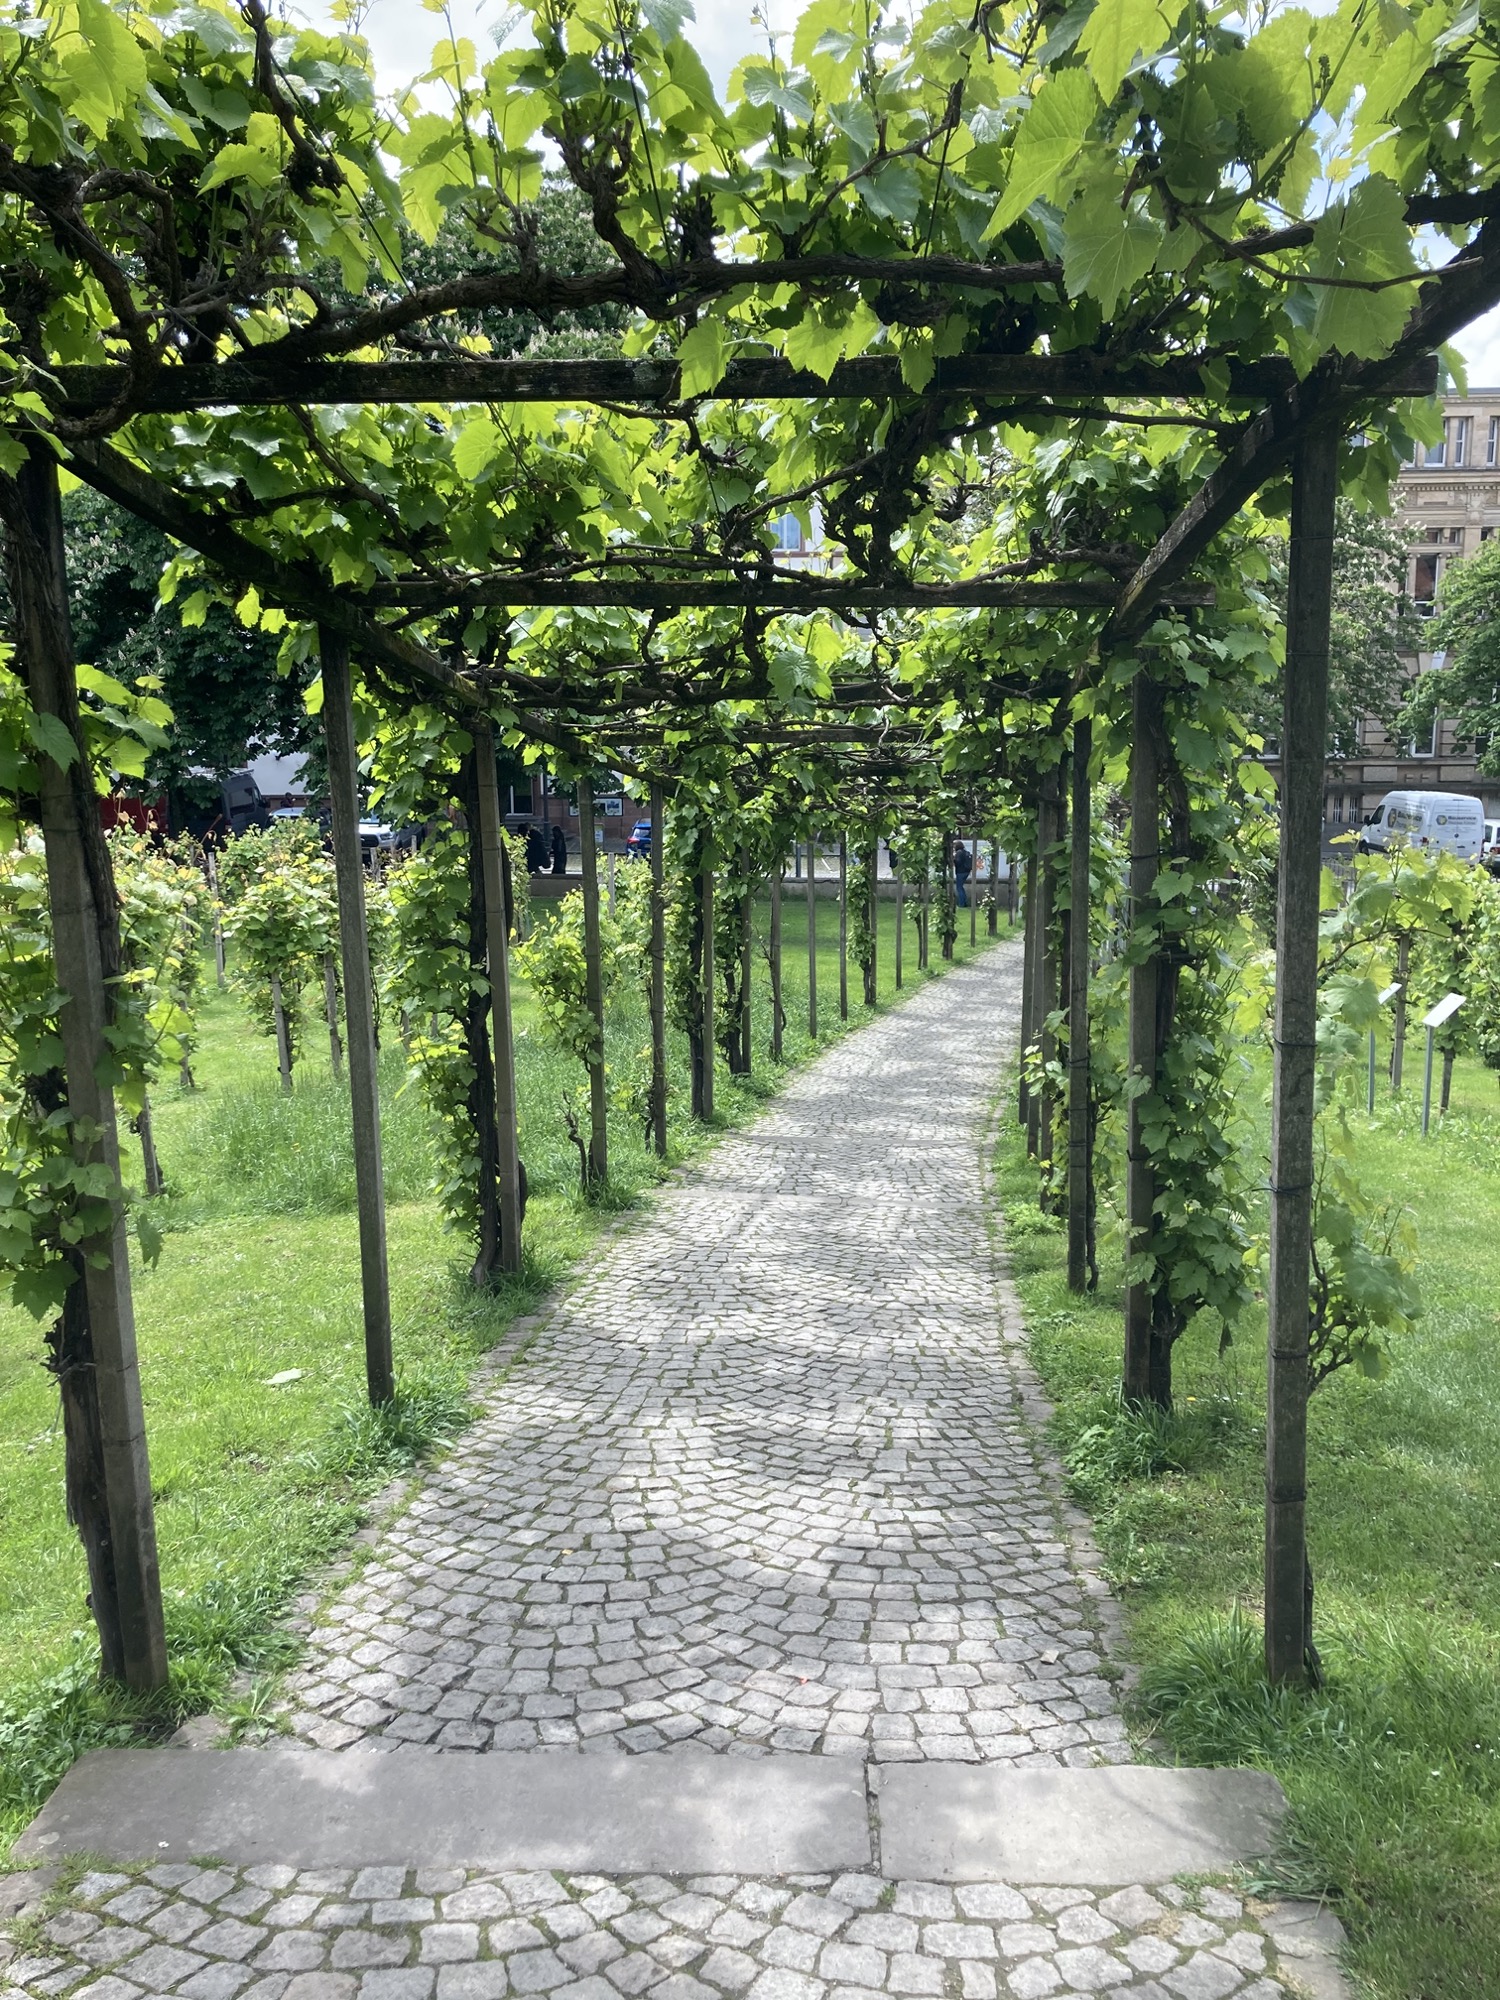 gepflasterter Weg durch einen Park, der von Weinreben umkränzt ist, durch das löchrige Blätterdach scheint die Sonne